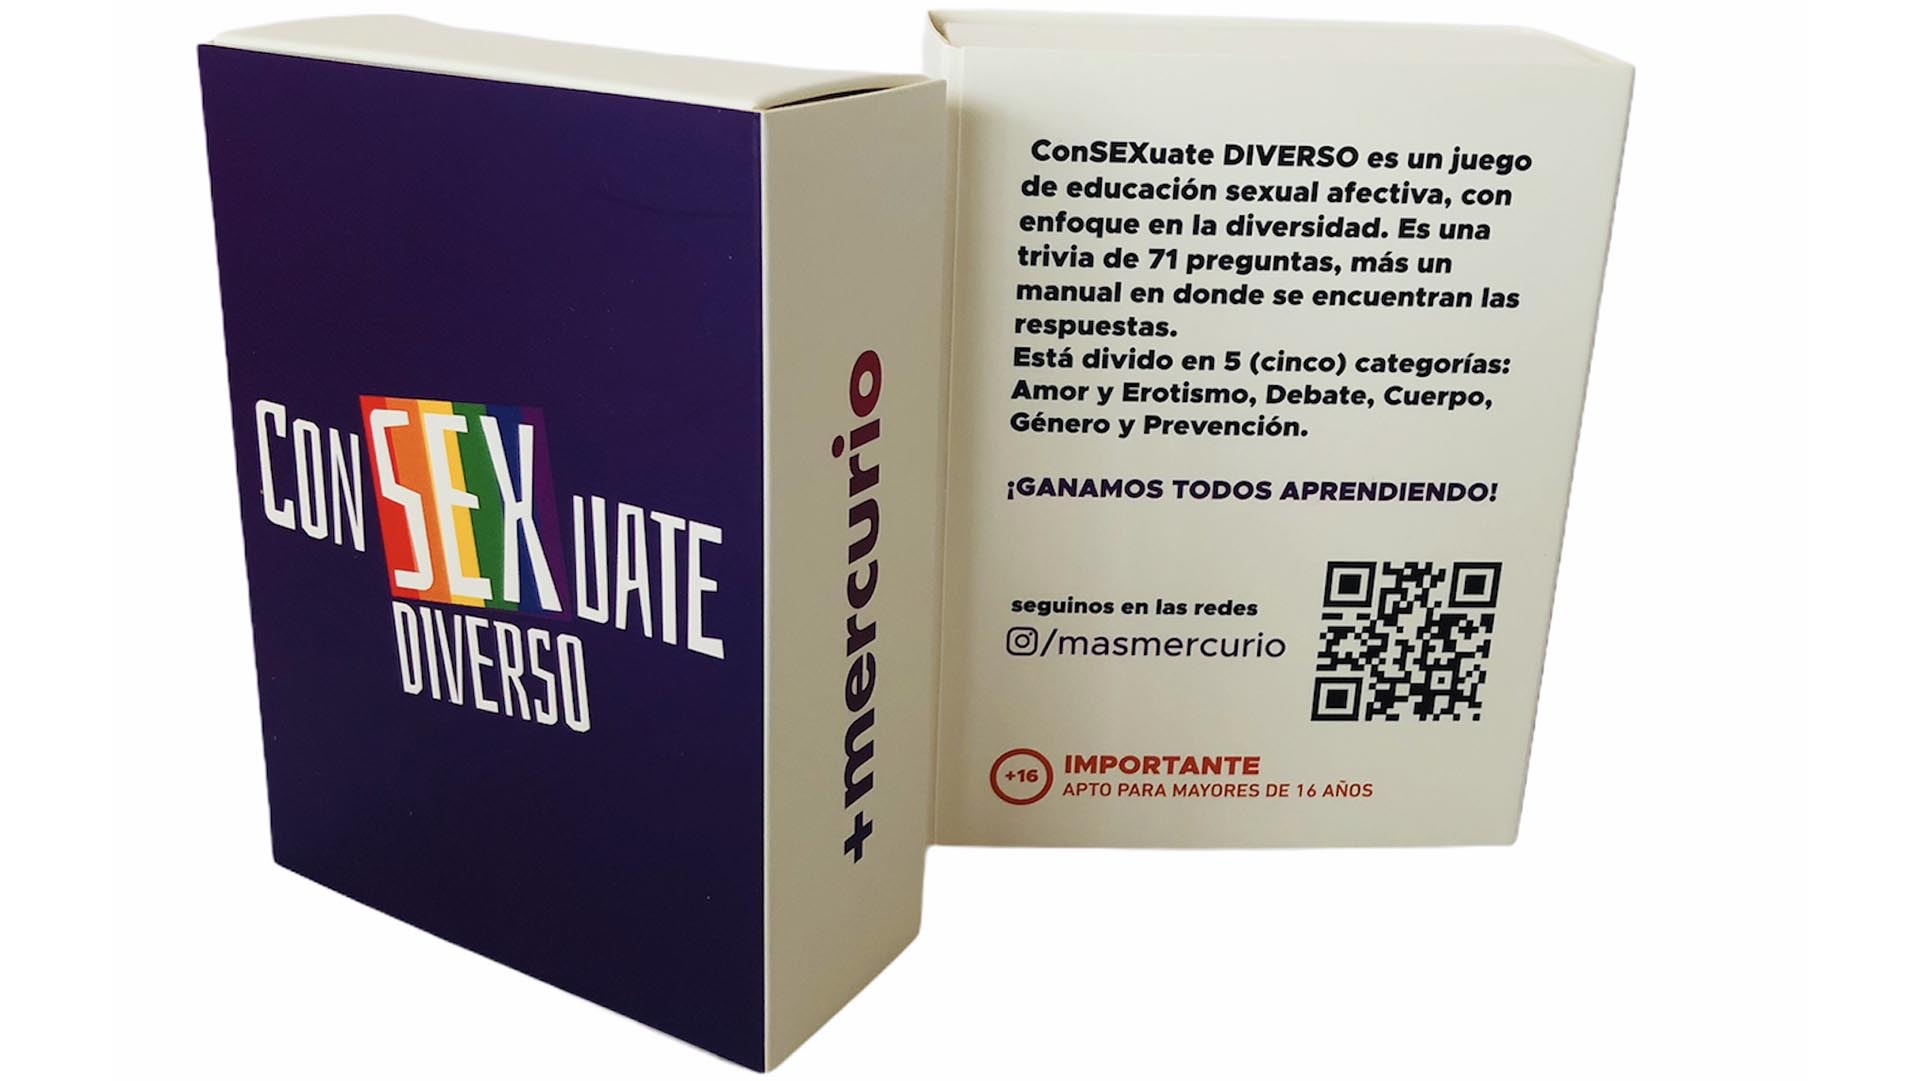 ConSexuate Diverso es una baraja de naipes con preguntas y respuestas sobre sexualidad y para mayores de 16 años (Cortesía de +mercurio)